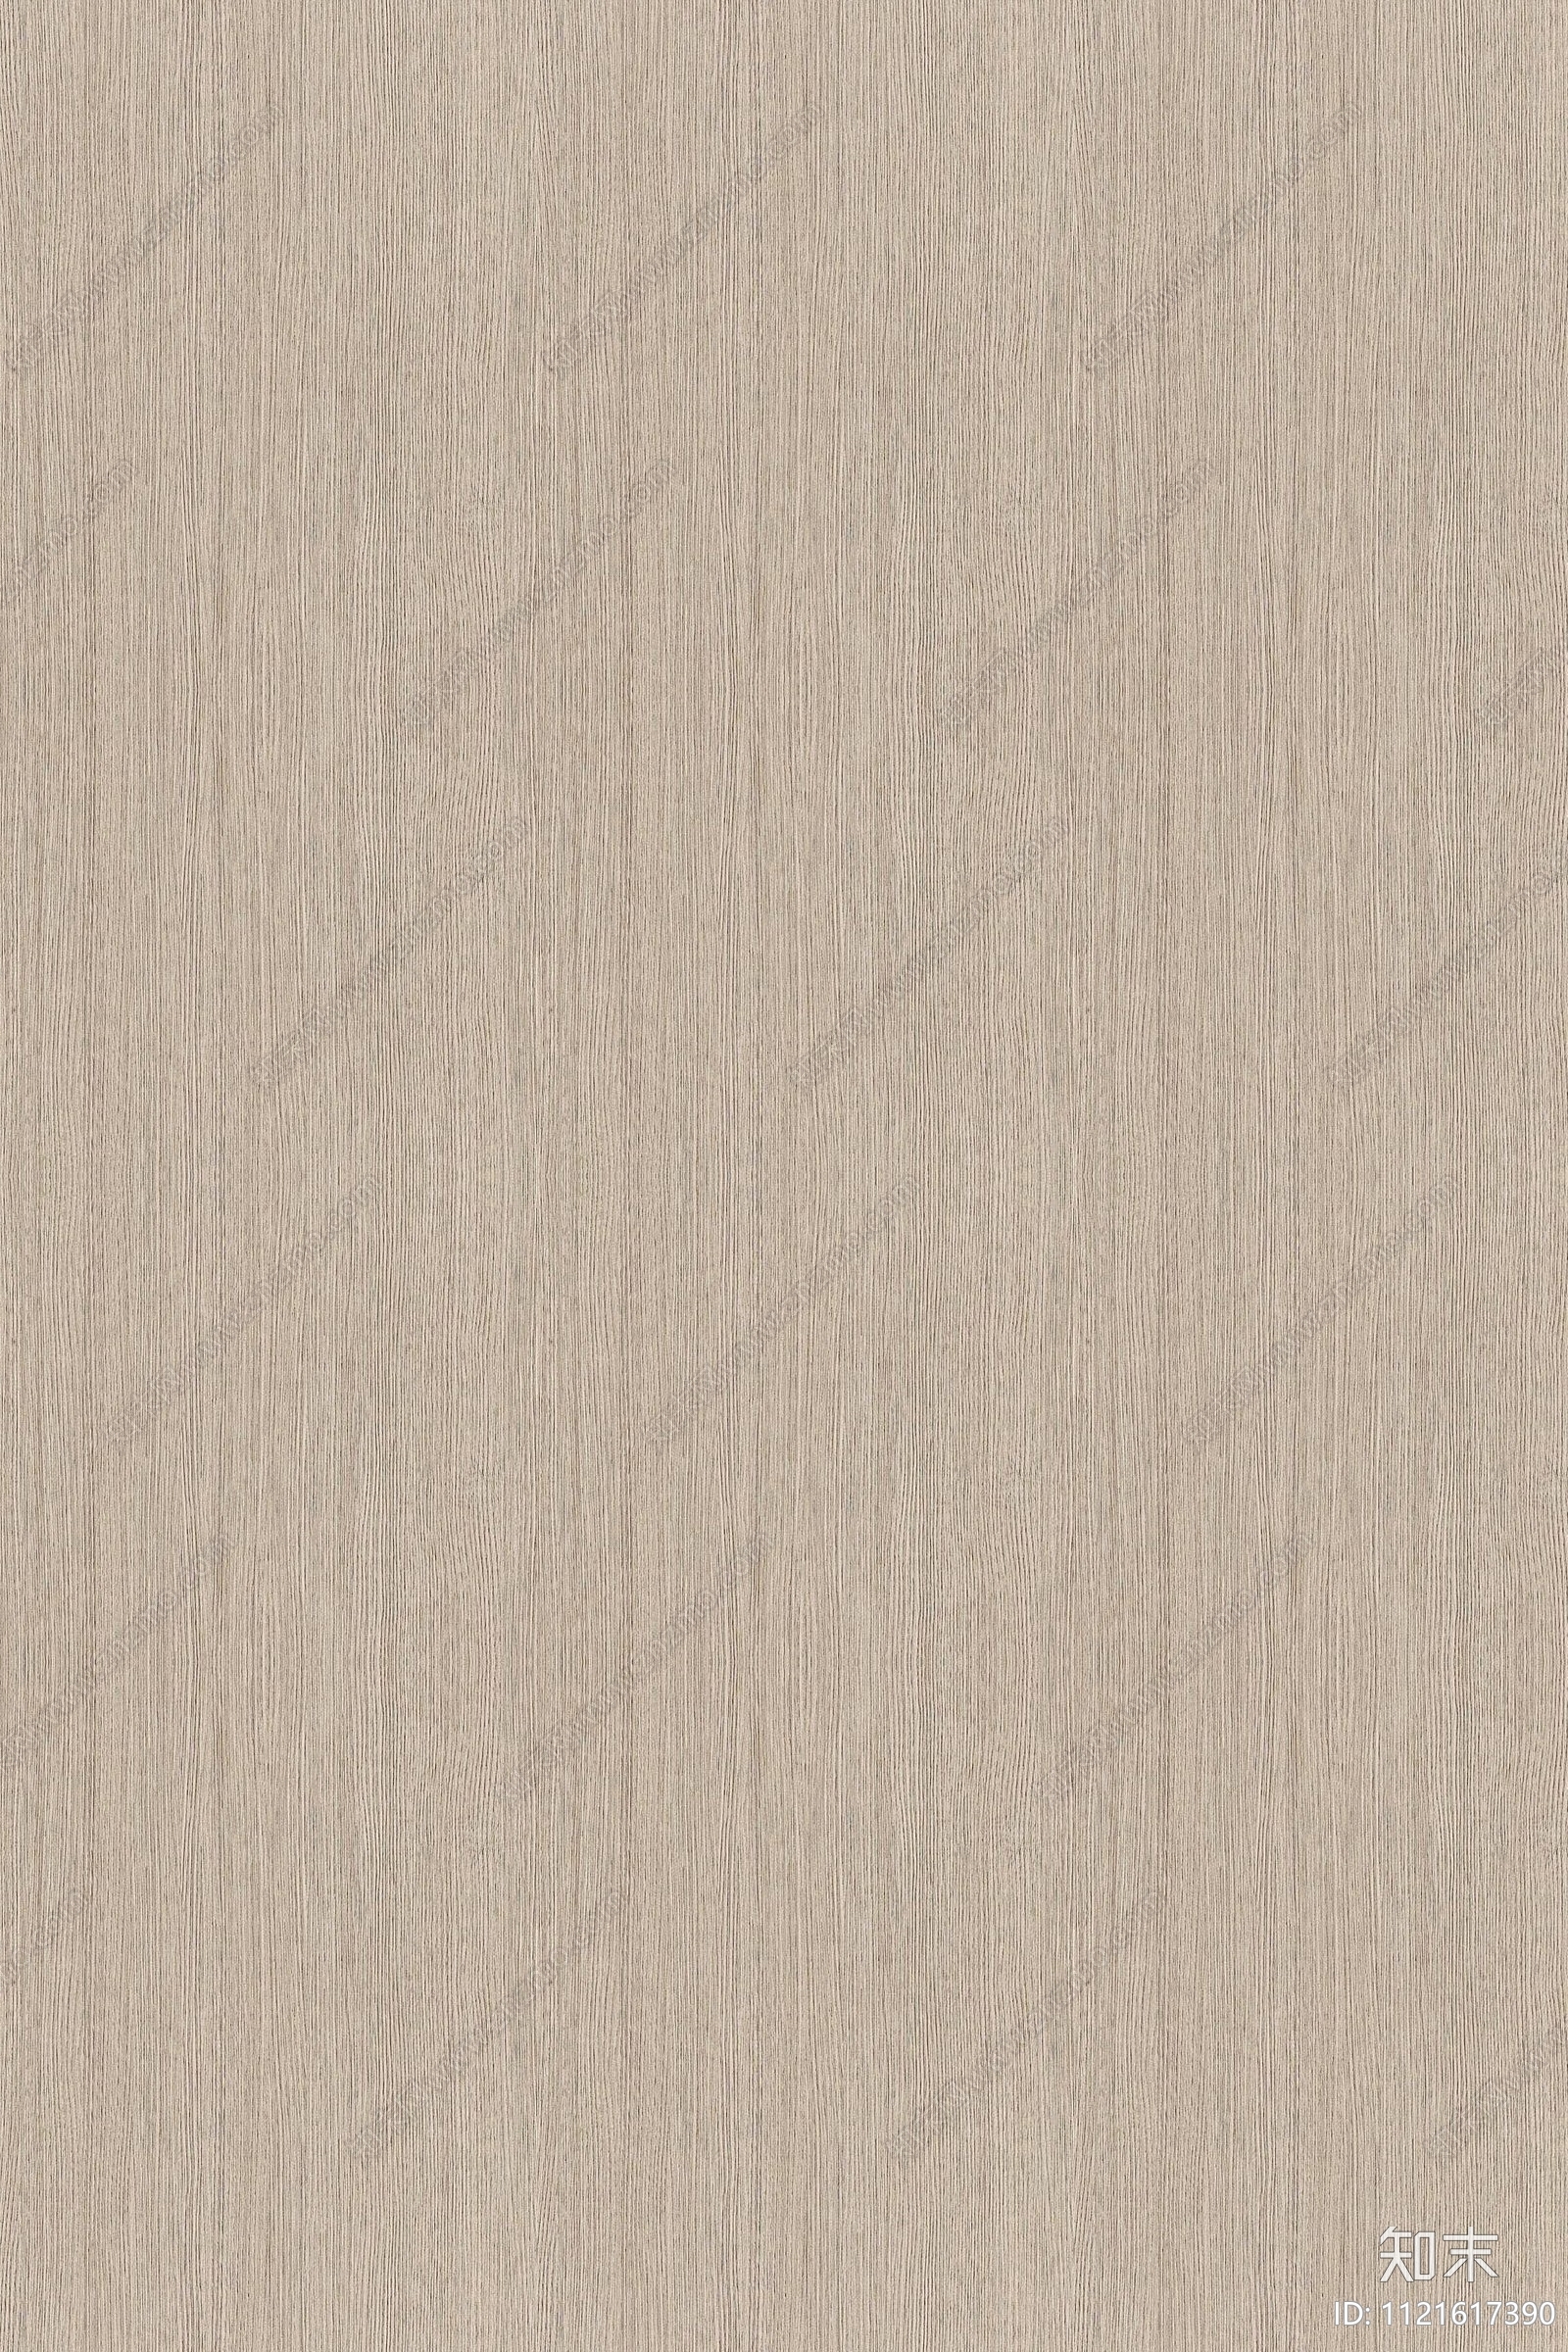 橡木木纹木饰面贴图下载【ID:1121617390】